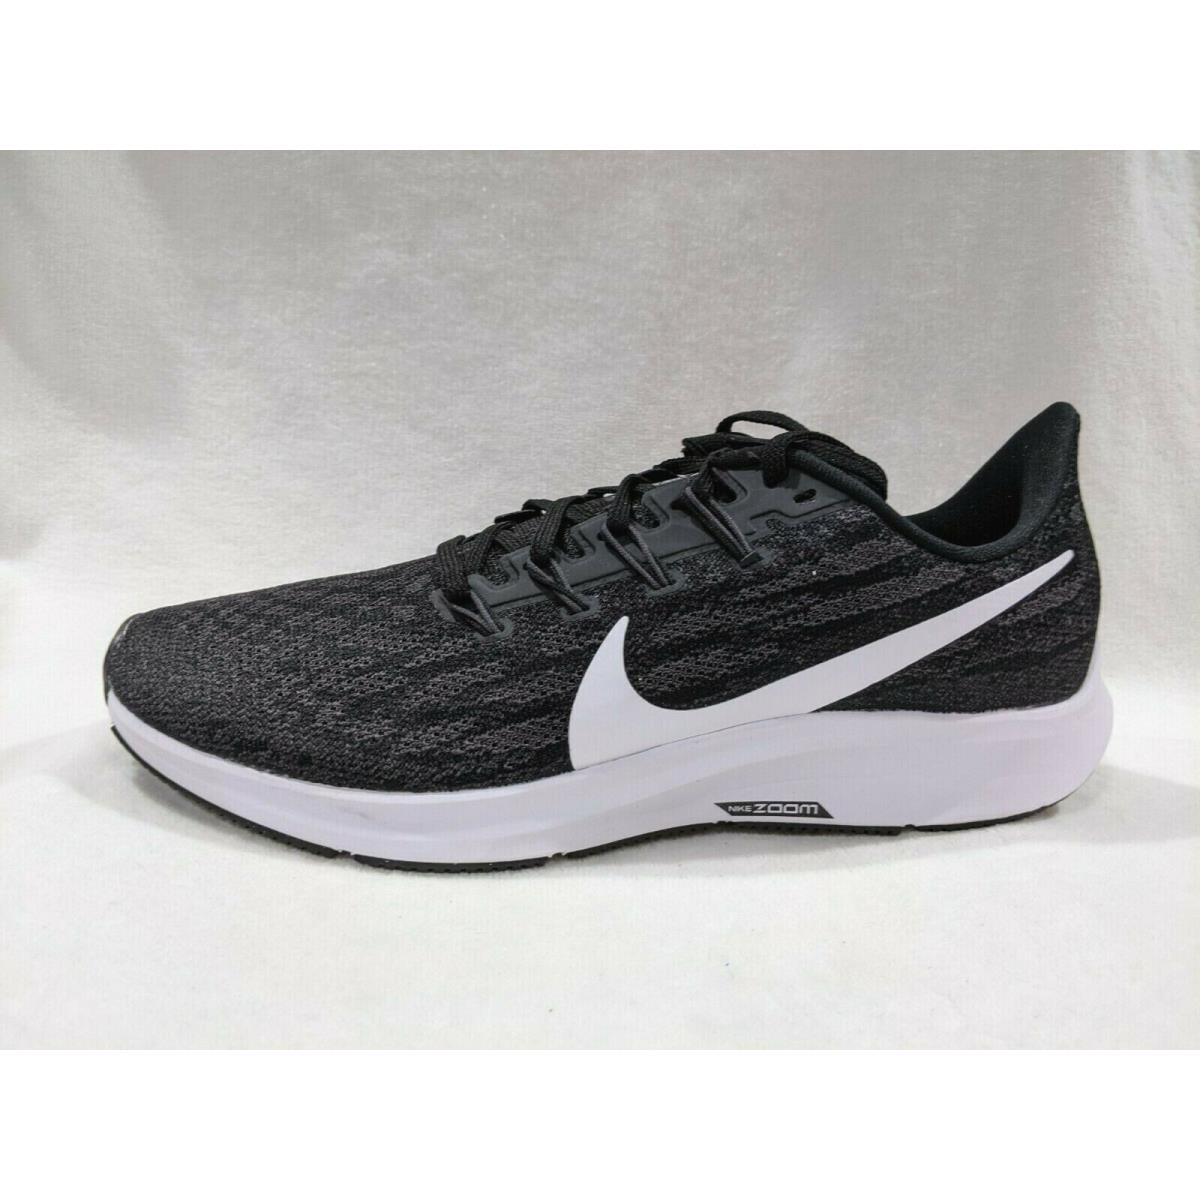 Previs site toonhoogte Langskomen Nike Air Zoom Pegasus 36 Black/white/grey Men`s Running Shoes - Size 9.5/14  NB | 883212878175 - Nike shoes Air Zoom Pegasus - Black , Grey , White |  SporTipTop